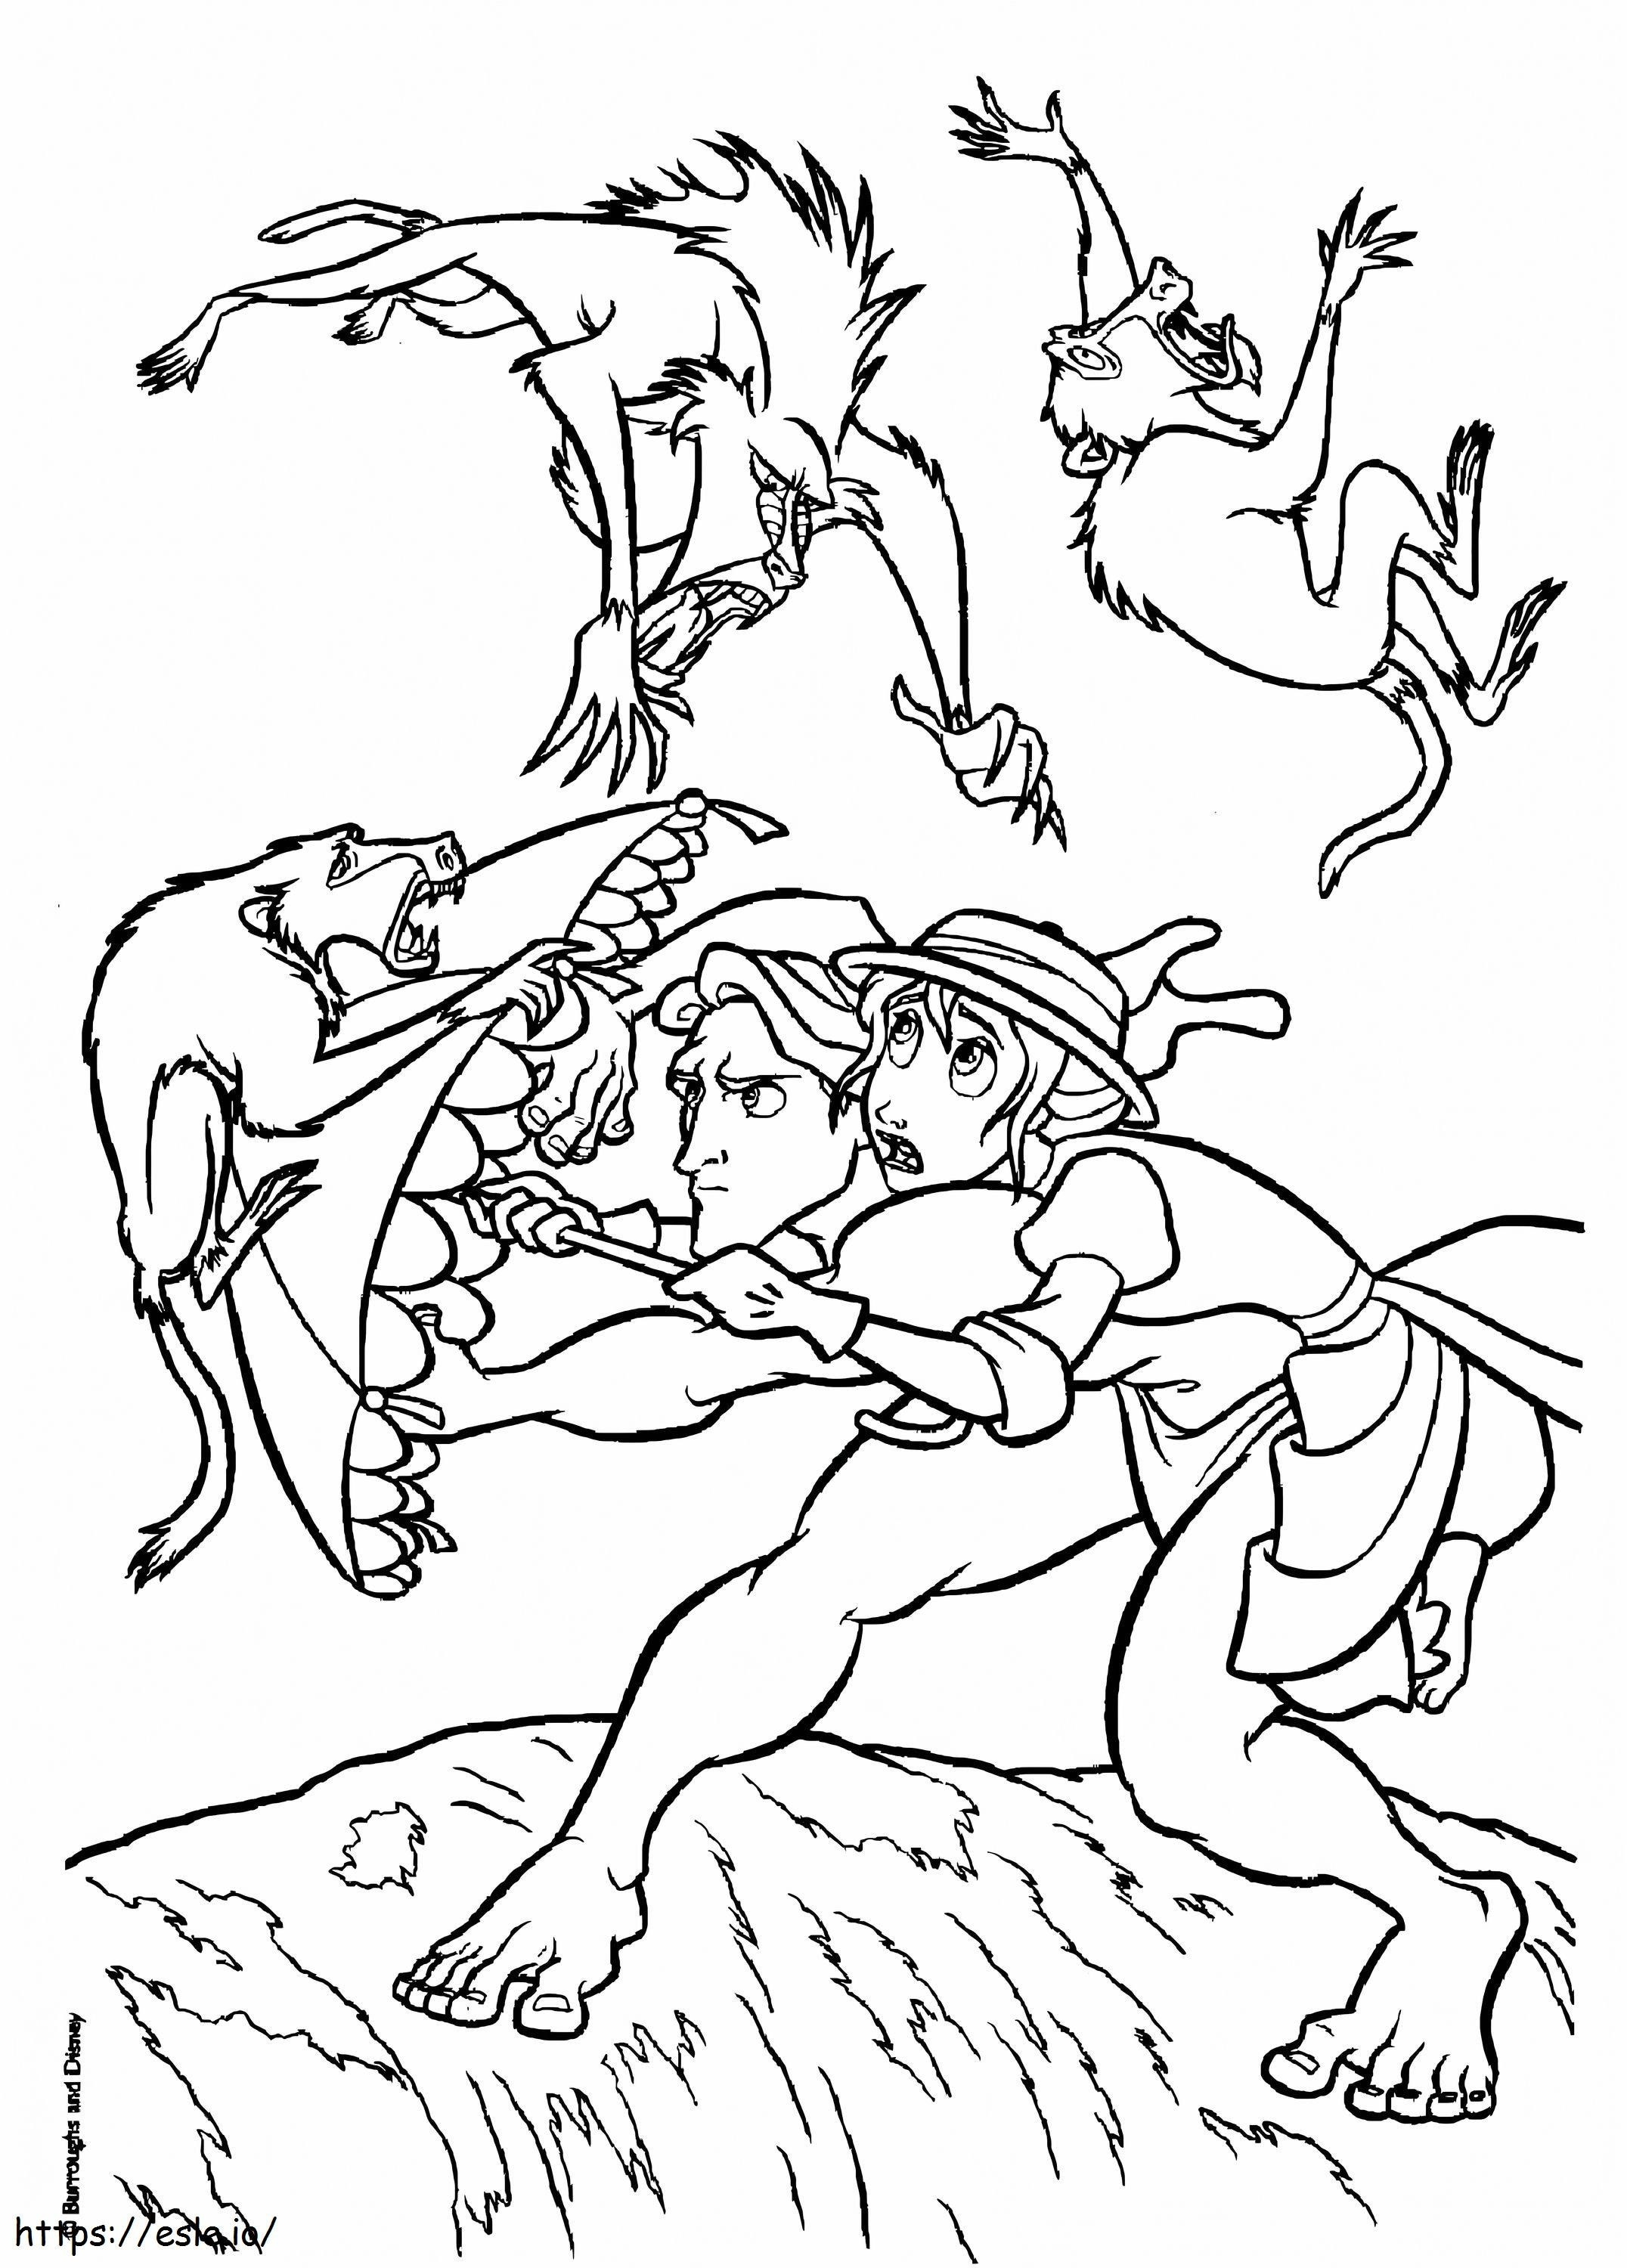 Tarzan und Jane gegen Tiere ausmalbilder